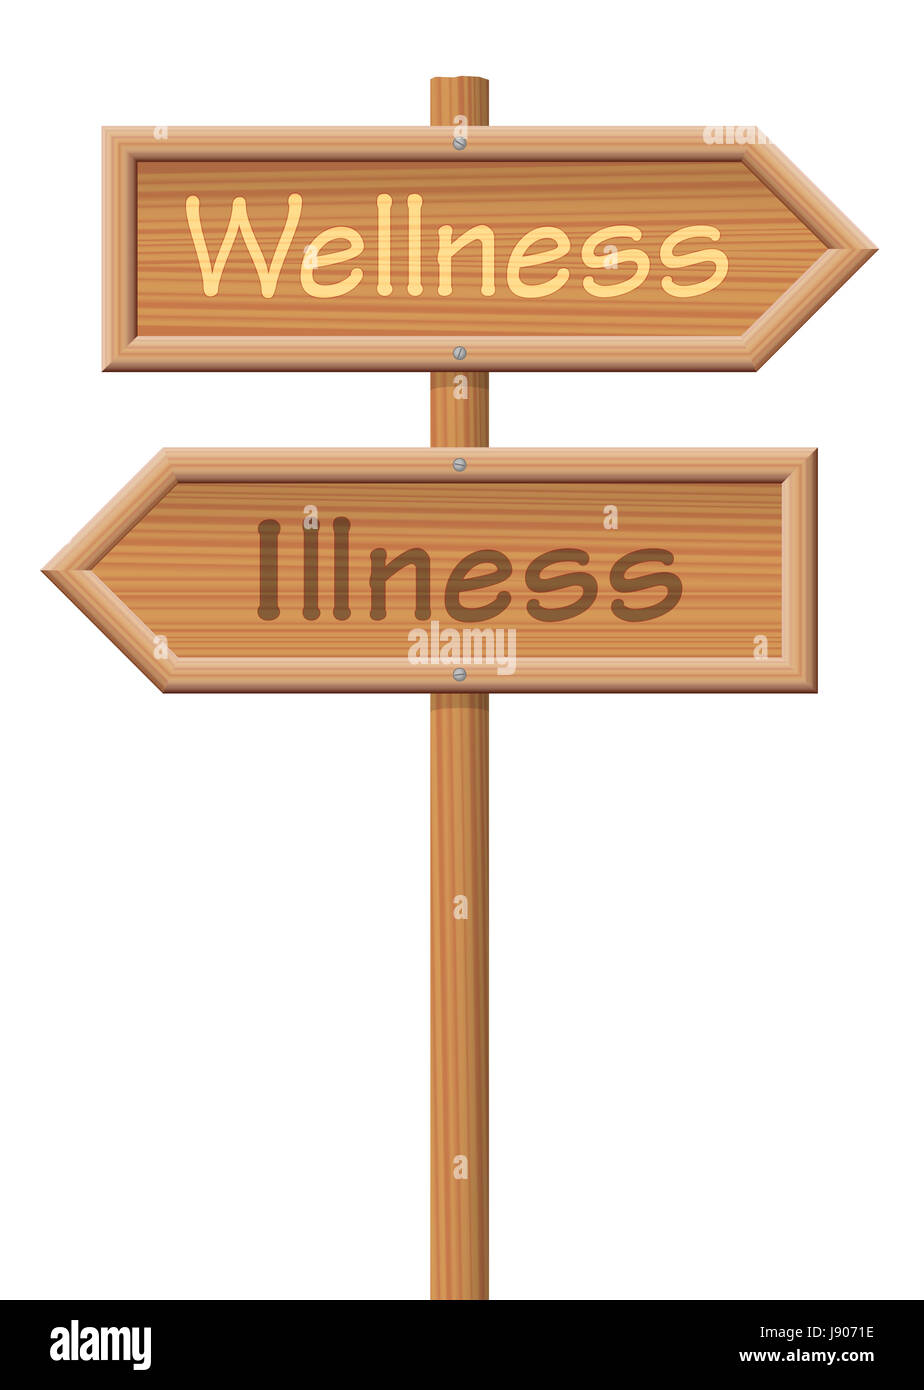 Il benessere e la malattia, scritto sui cartelli di legno in direzioni opposte, come un simbolo per le due opzioni di salute o di malattia. Illustrazione. Foto Stock